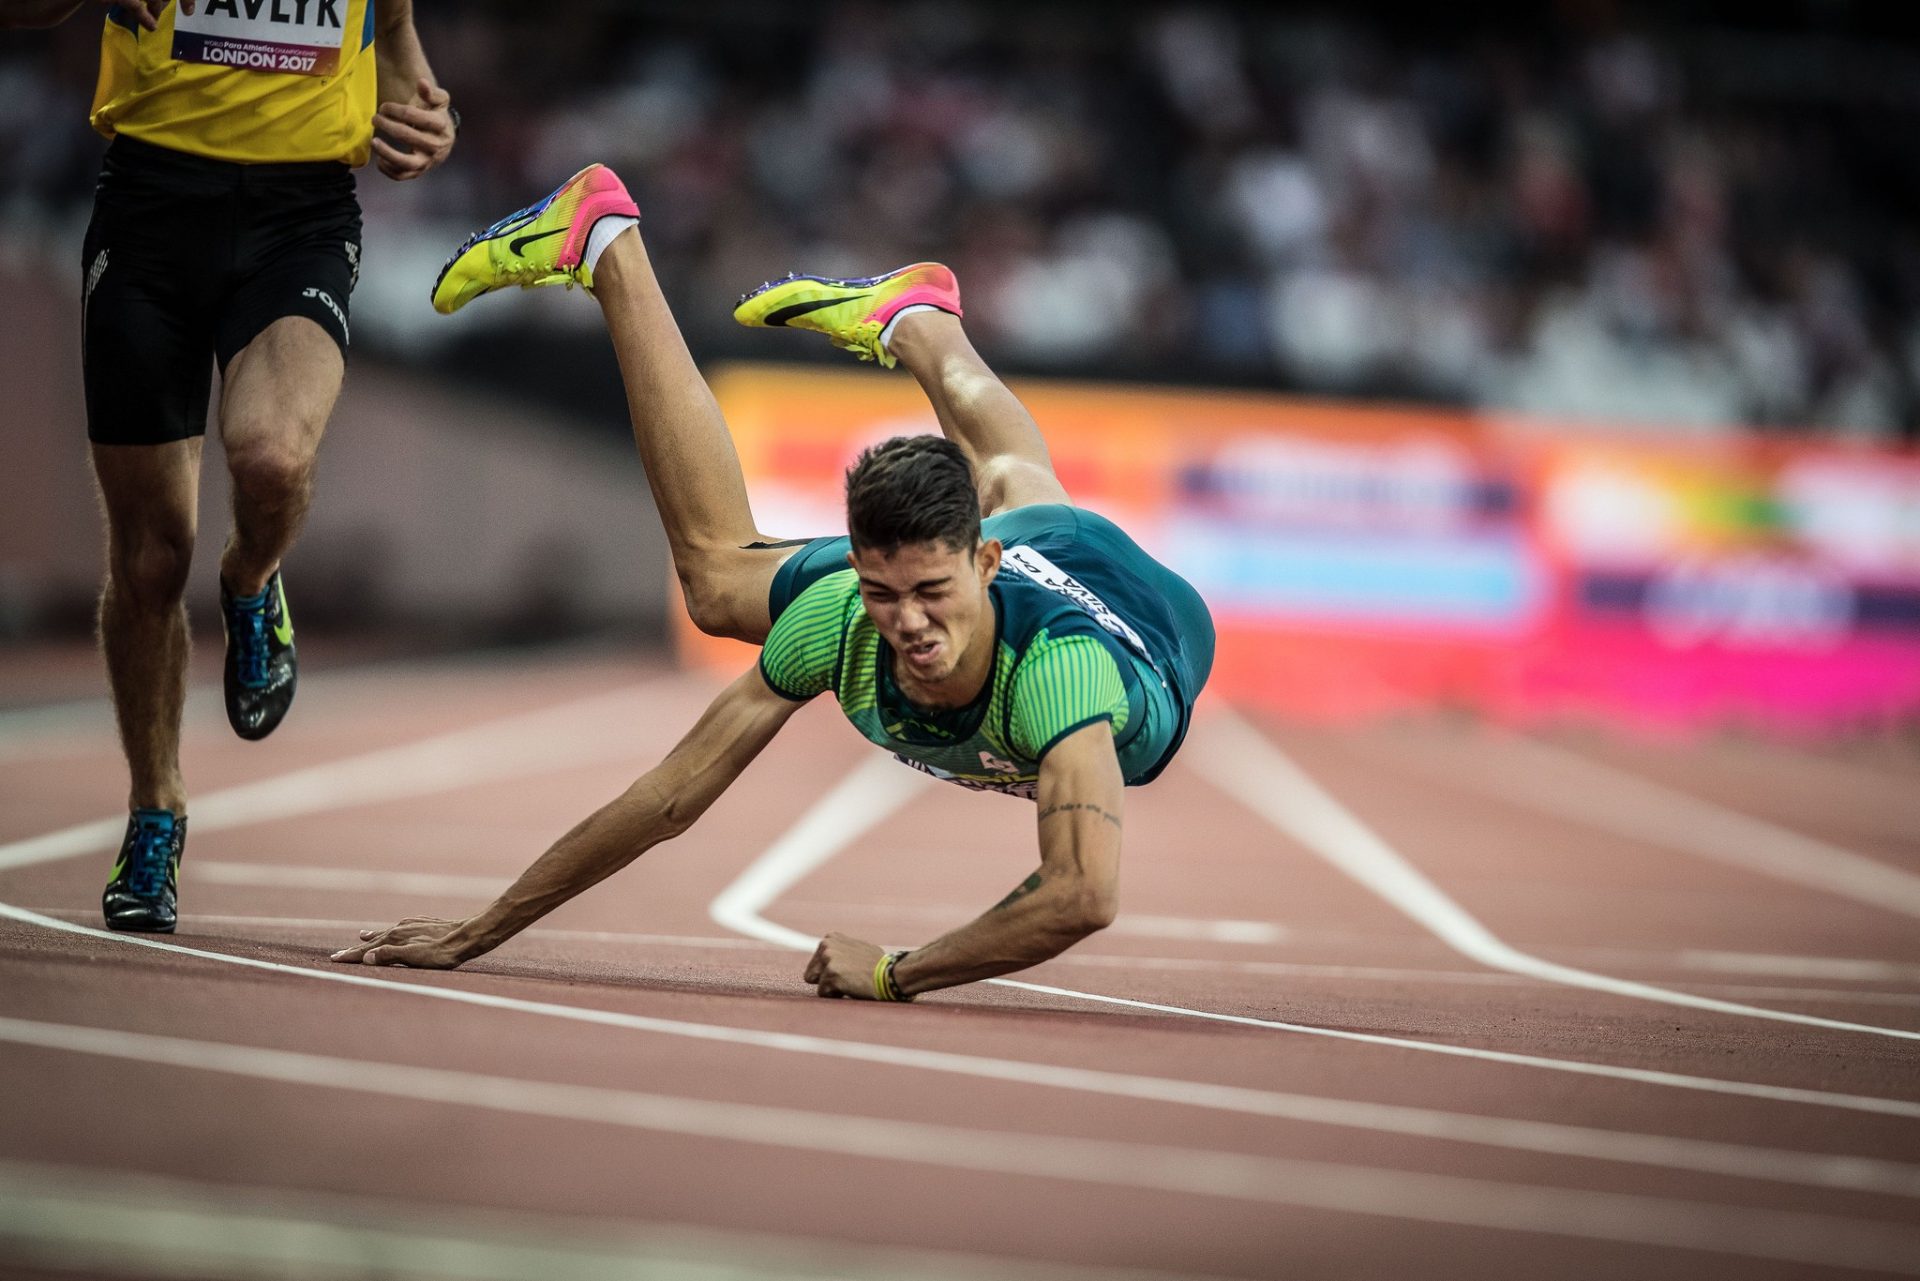 Atletas de Minas Gerais ajudam Brasil a terminar o Mundial de Atletismo Paralímpico em 9º lugar geral